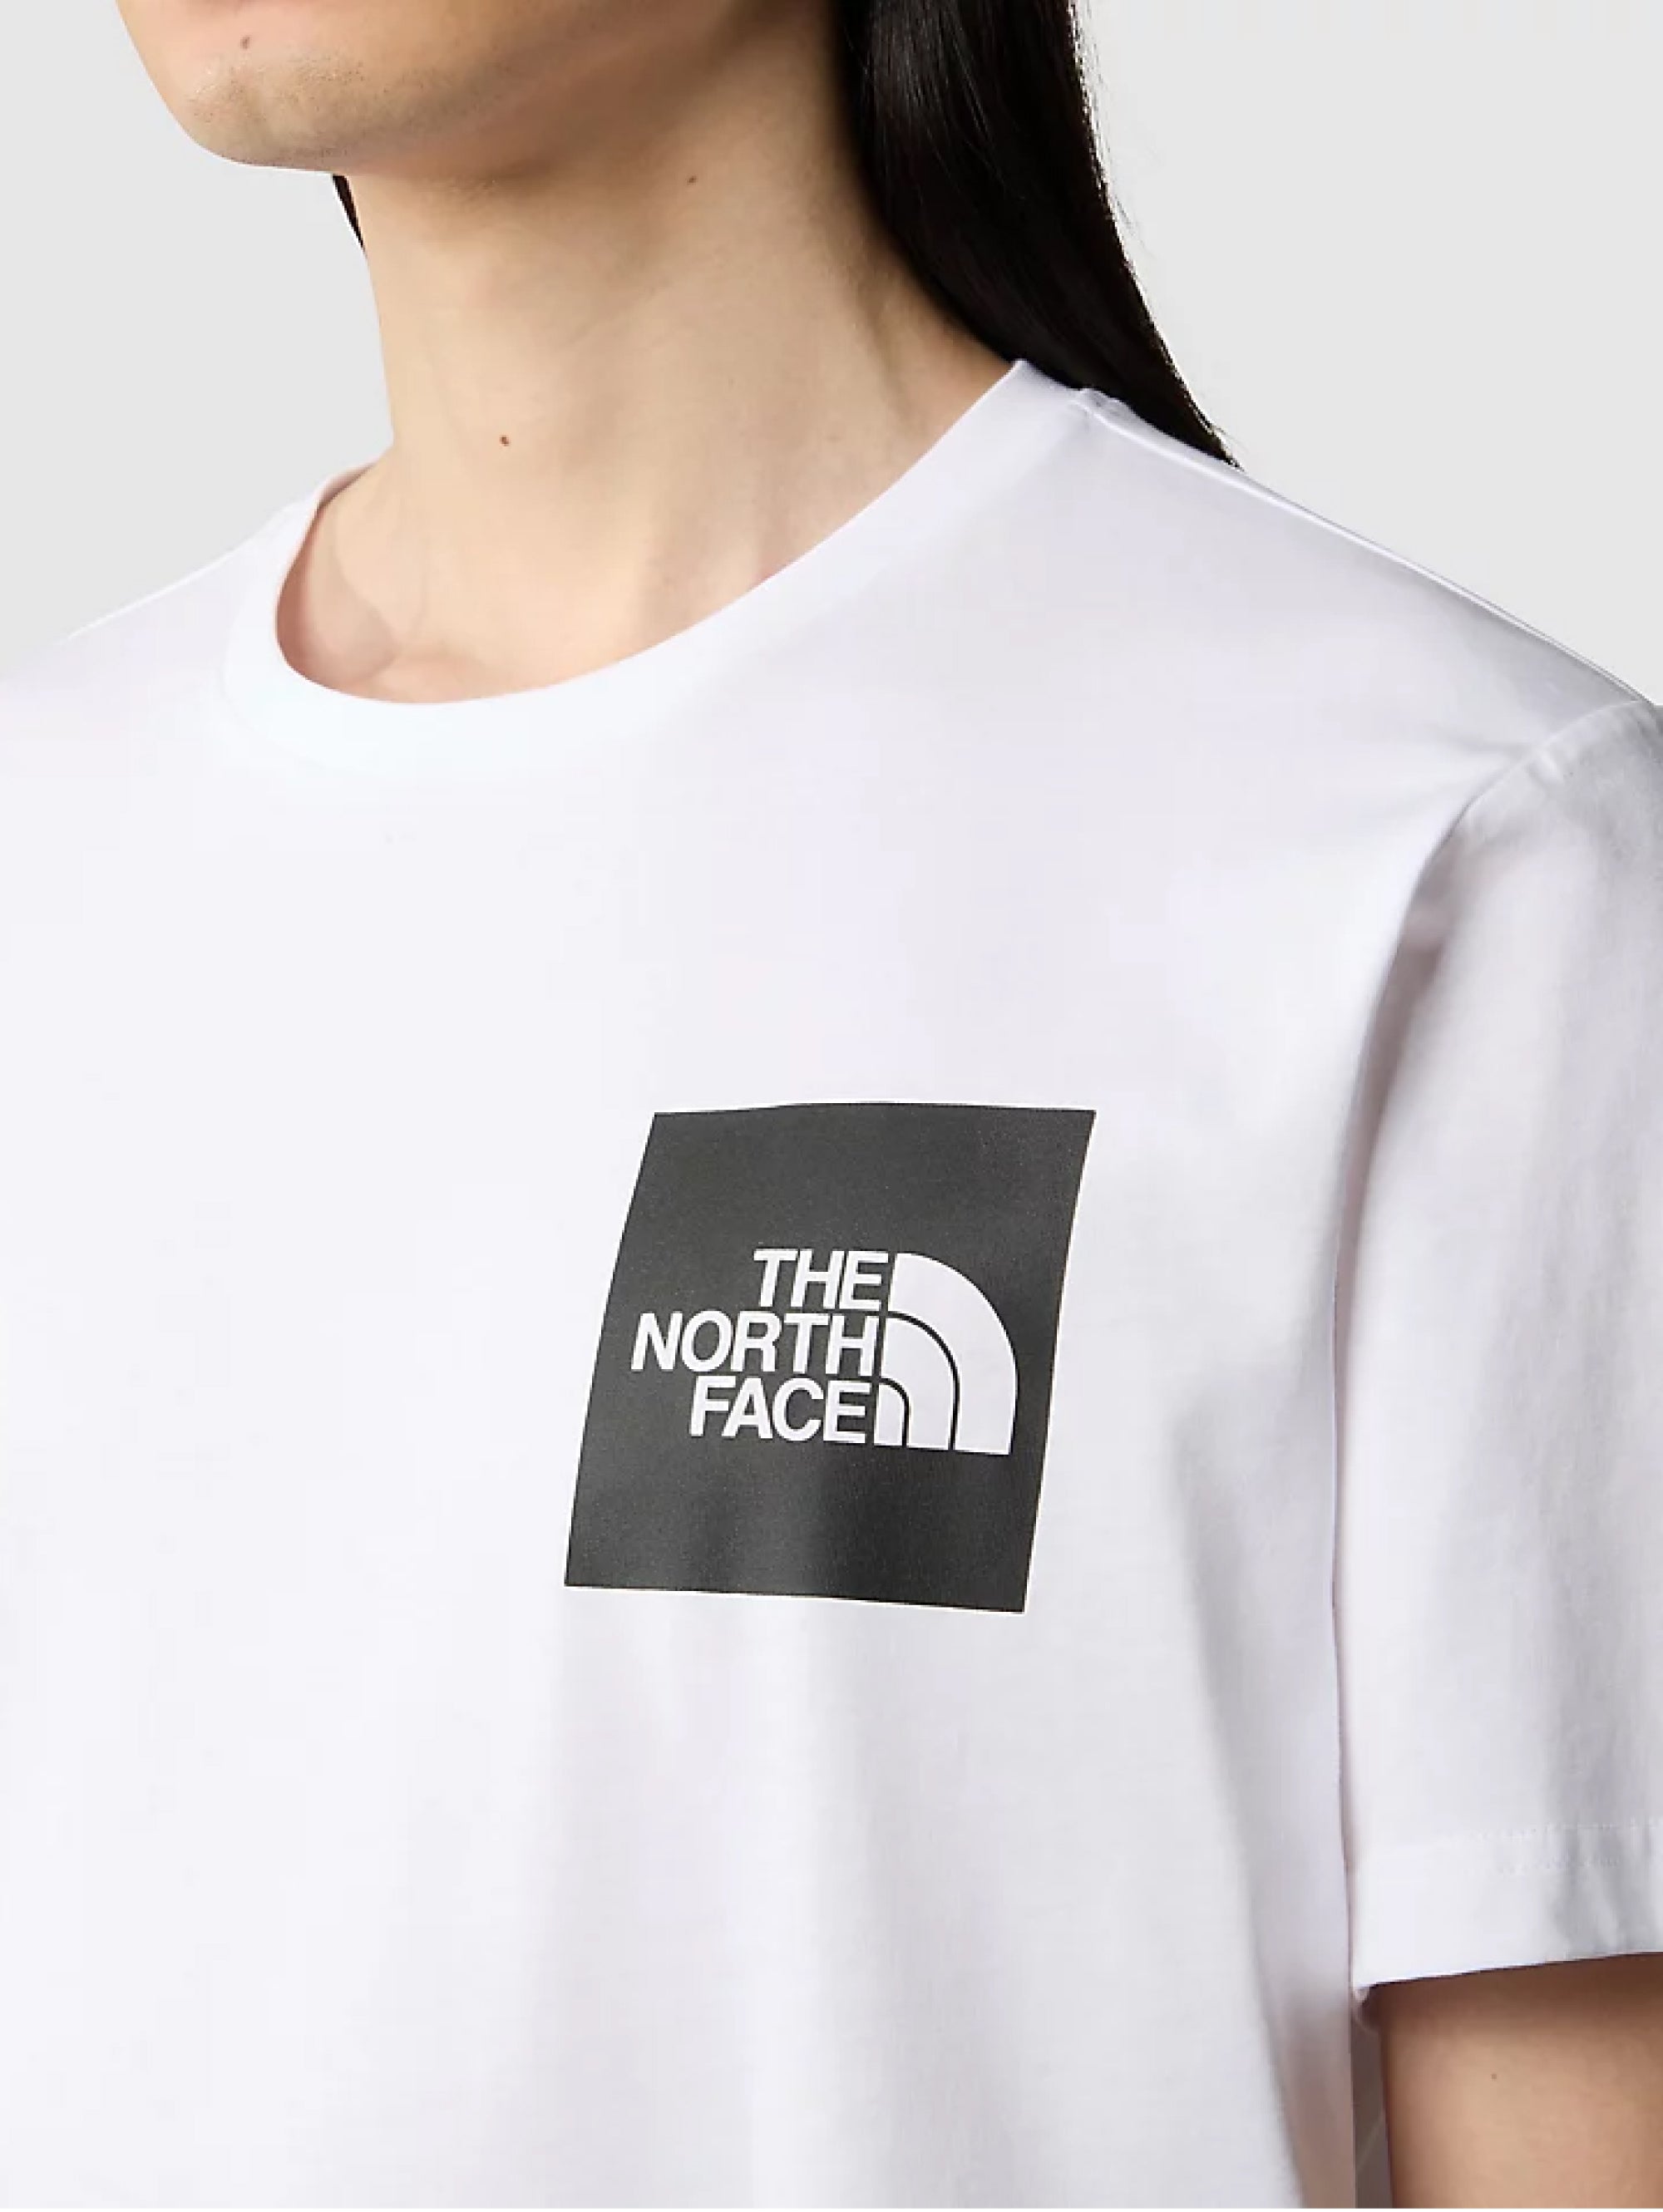 Kurzärmliges T-Shirt mit weißem Aufdruck